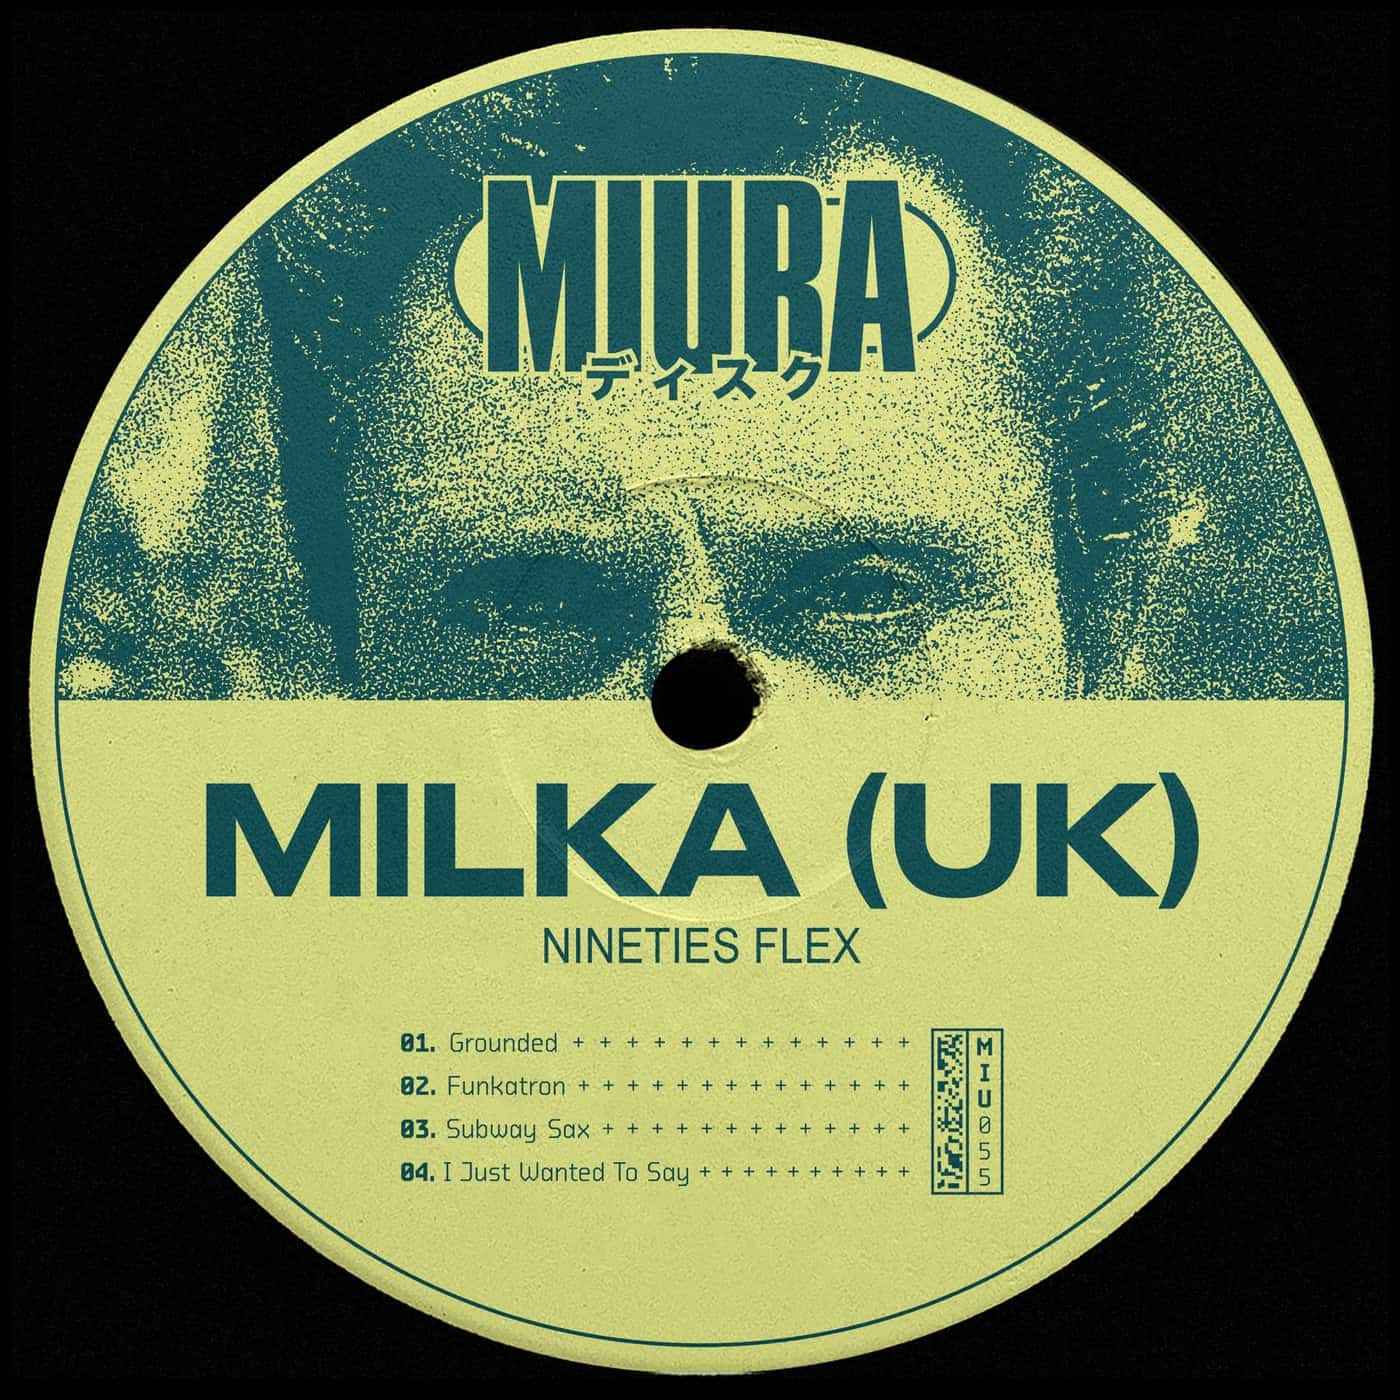 Download Milka (UK) - Nineties Flex on Electrobuzz